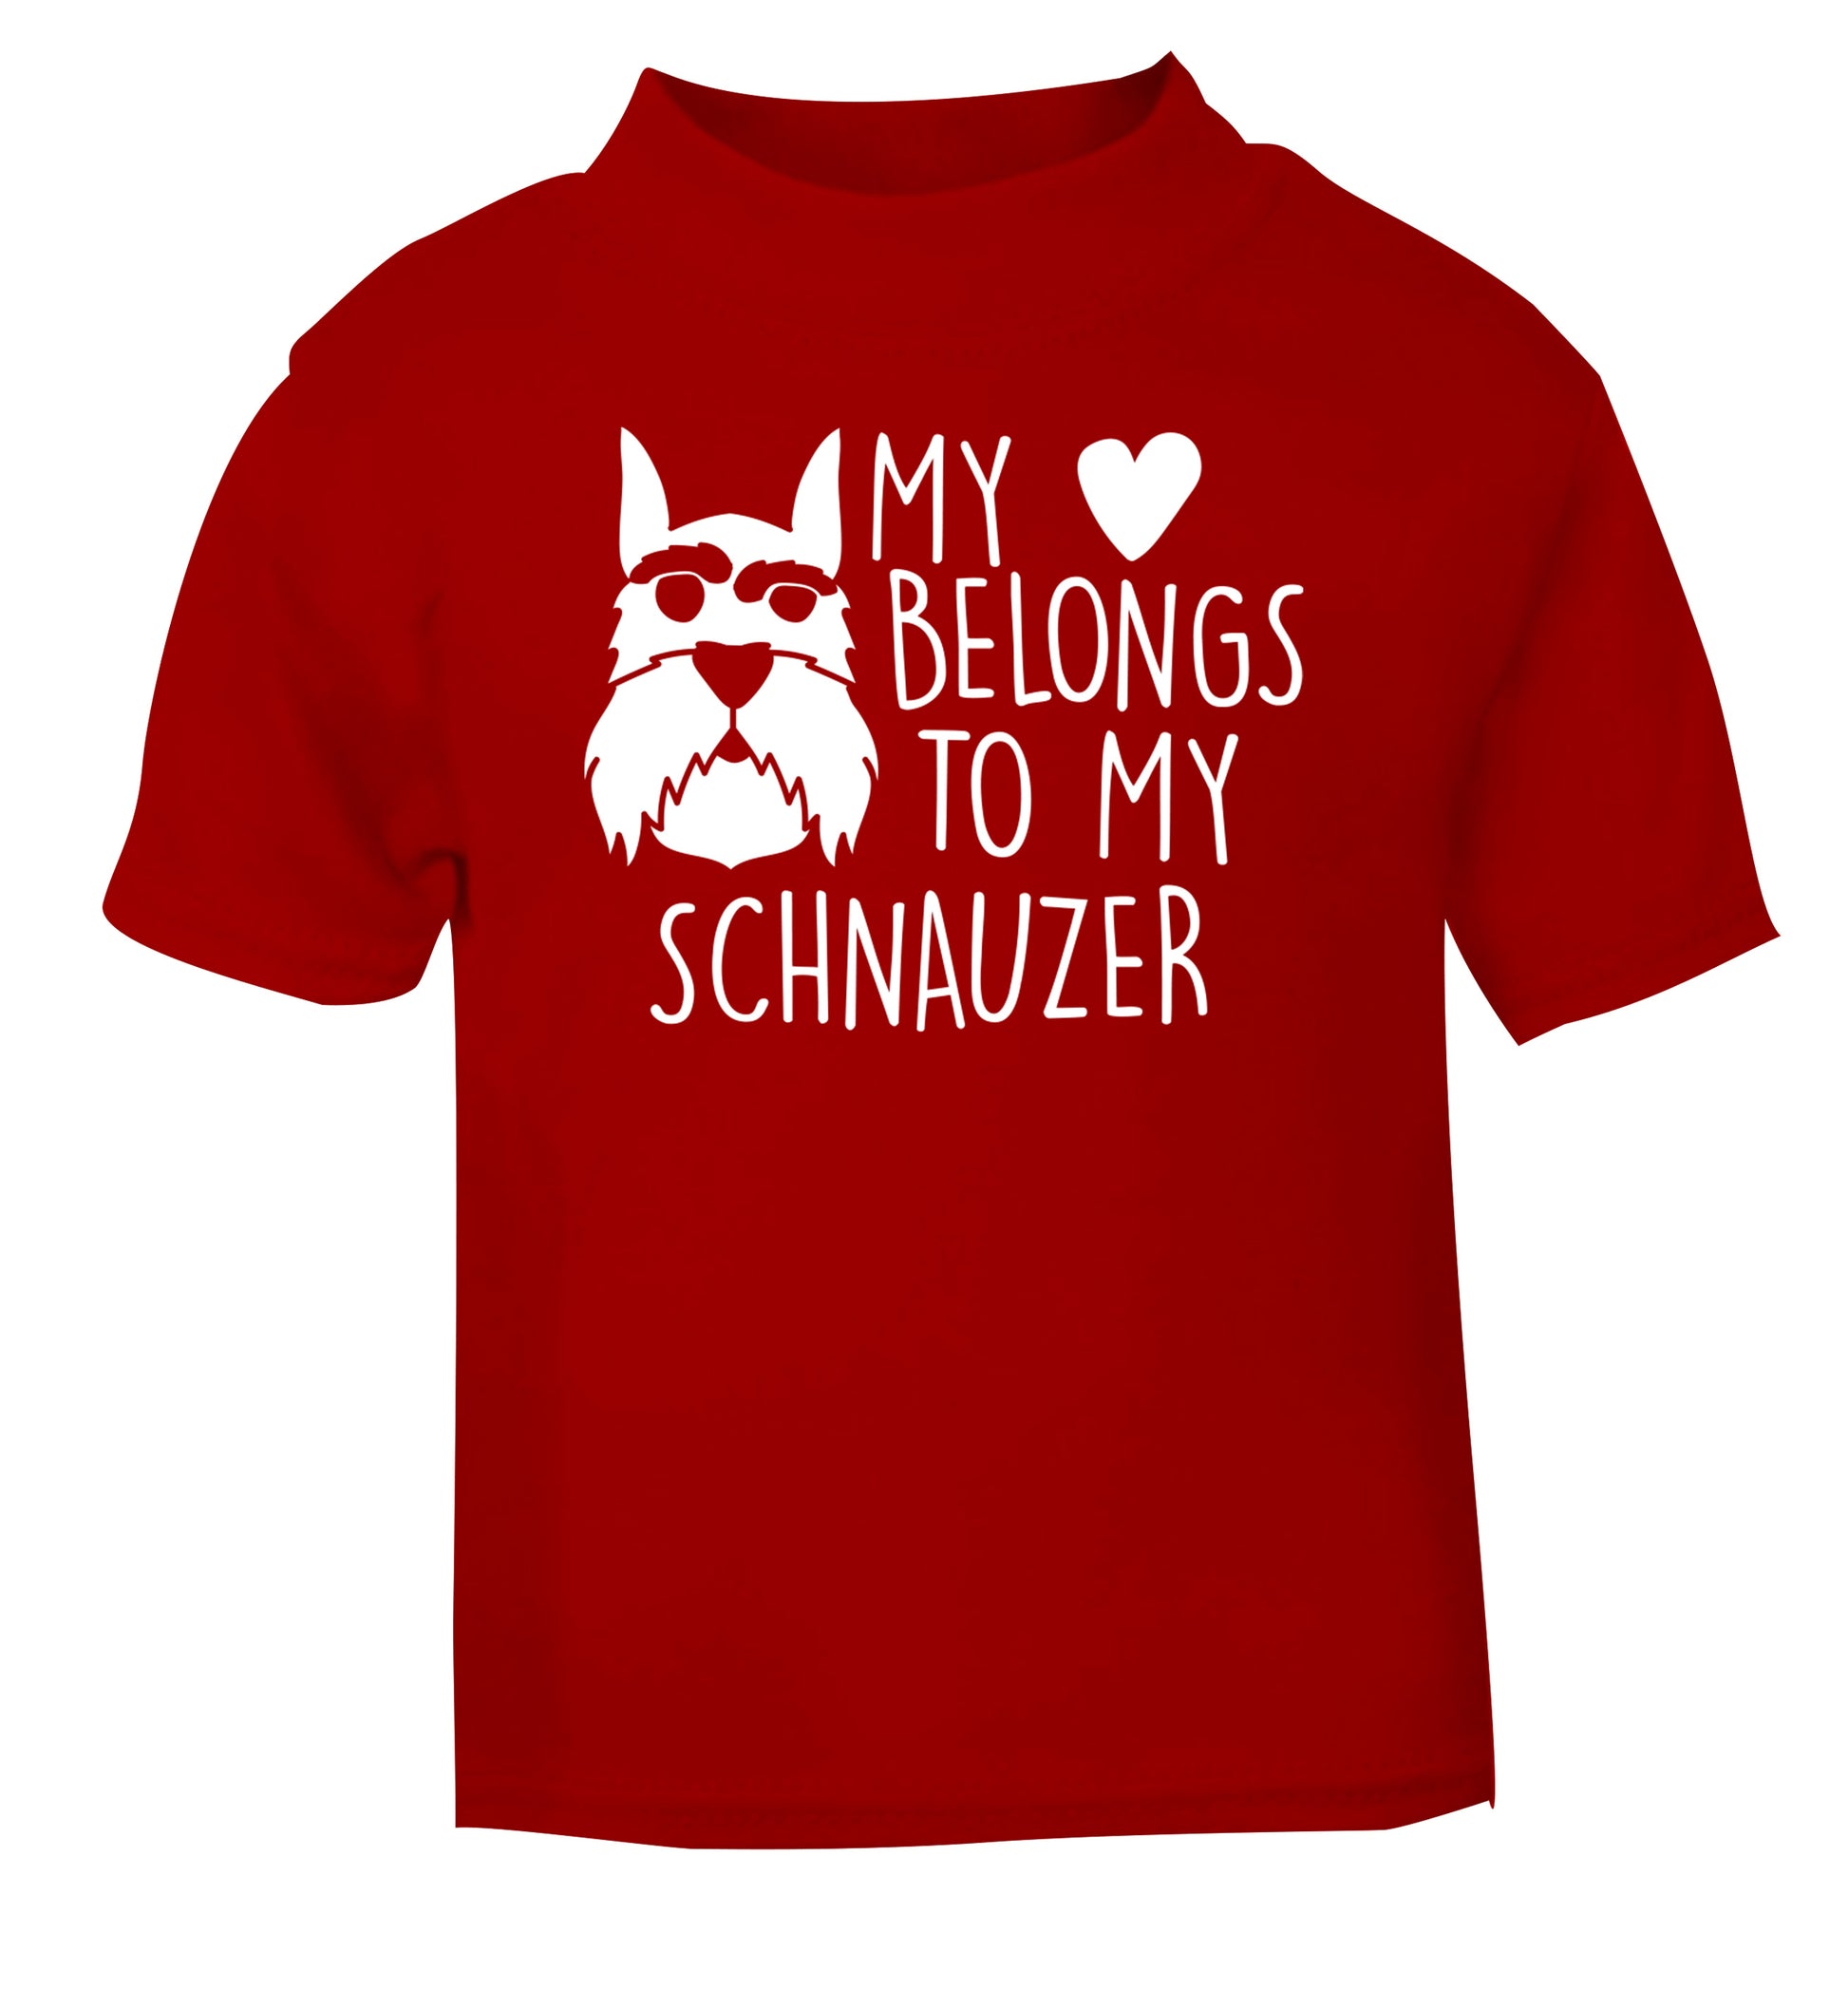 My heart belongs to my schnauzer red Baby Toddler Tshirt 2 Years